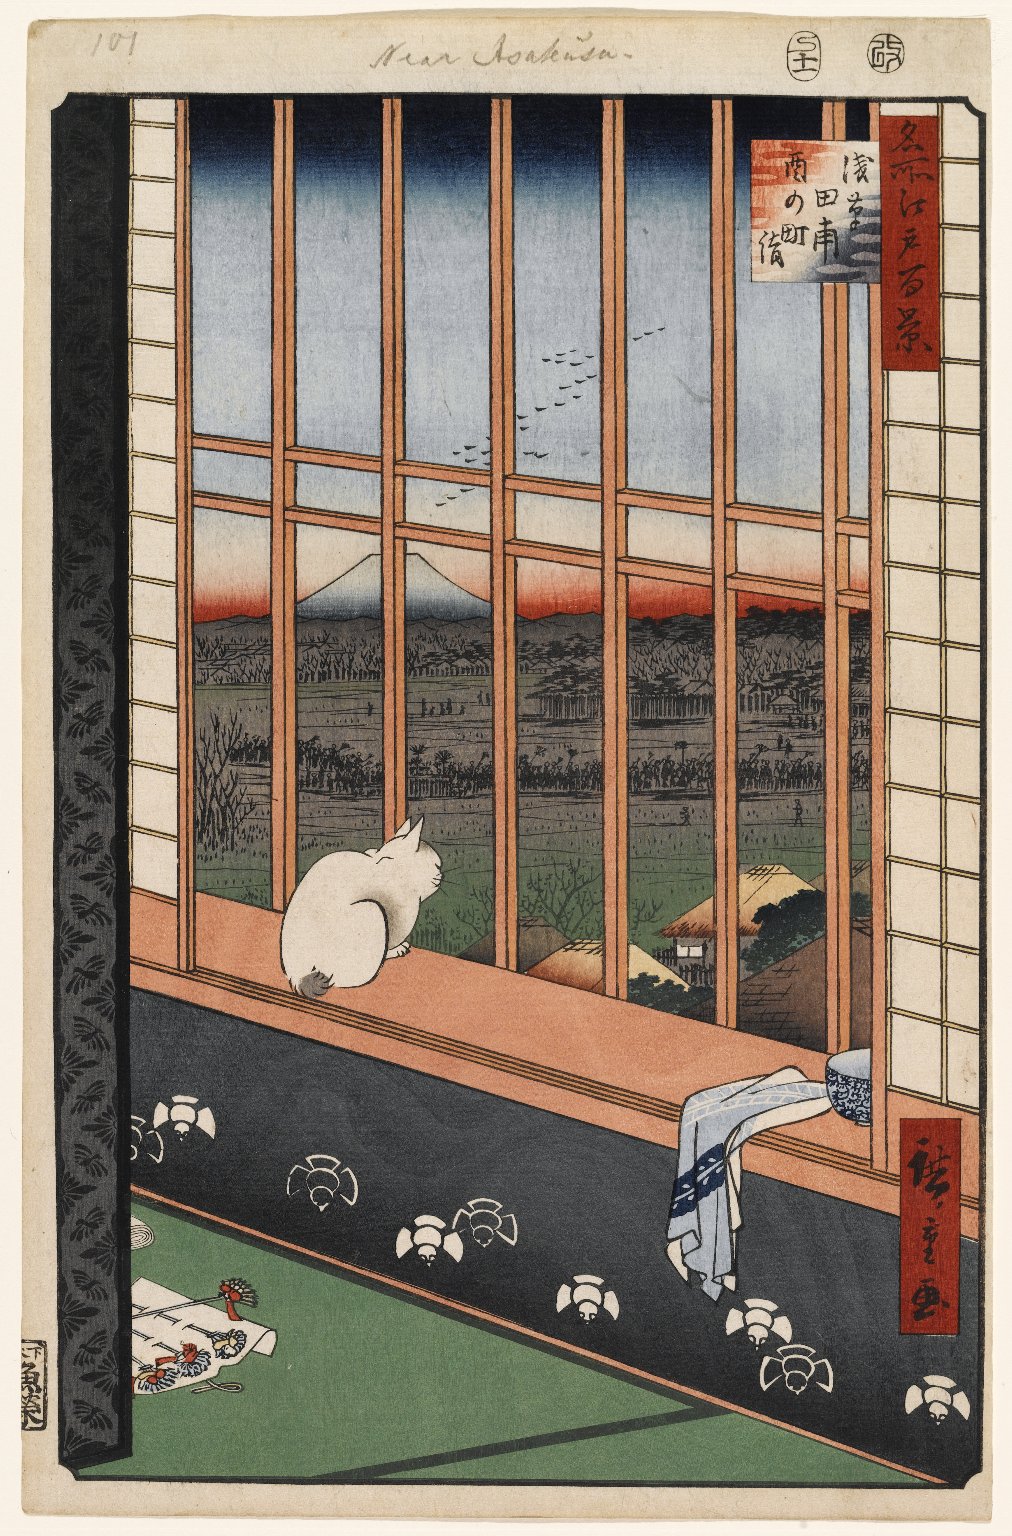 第101号，浅草稻田和都灵町节 by 安藤广重  - 1857年 - 36 x 23.5厘米 布鲁克林博物馆